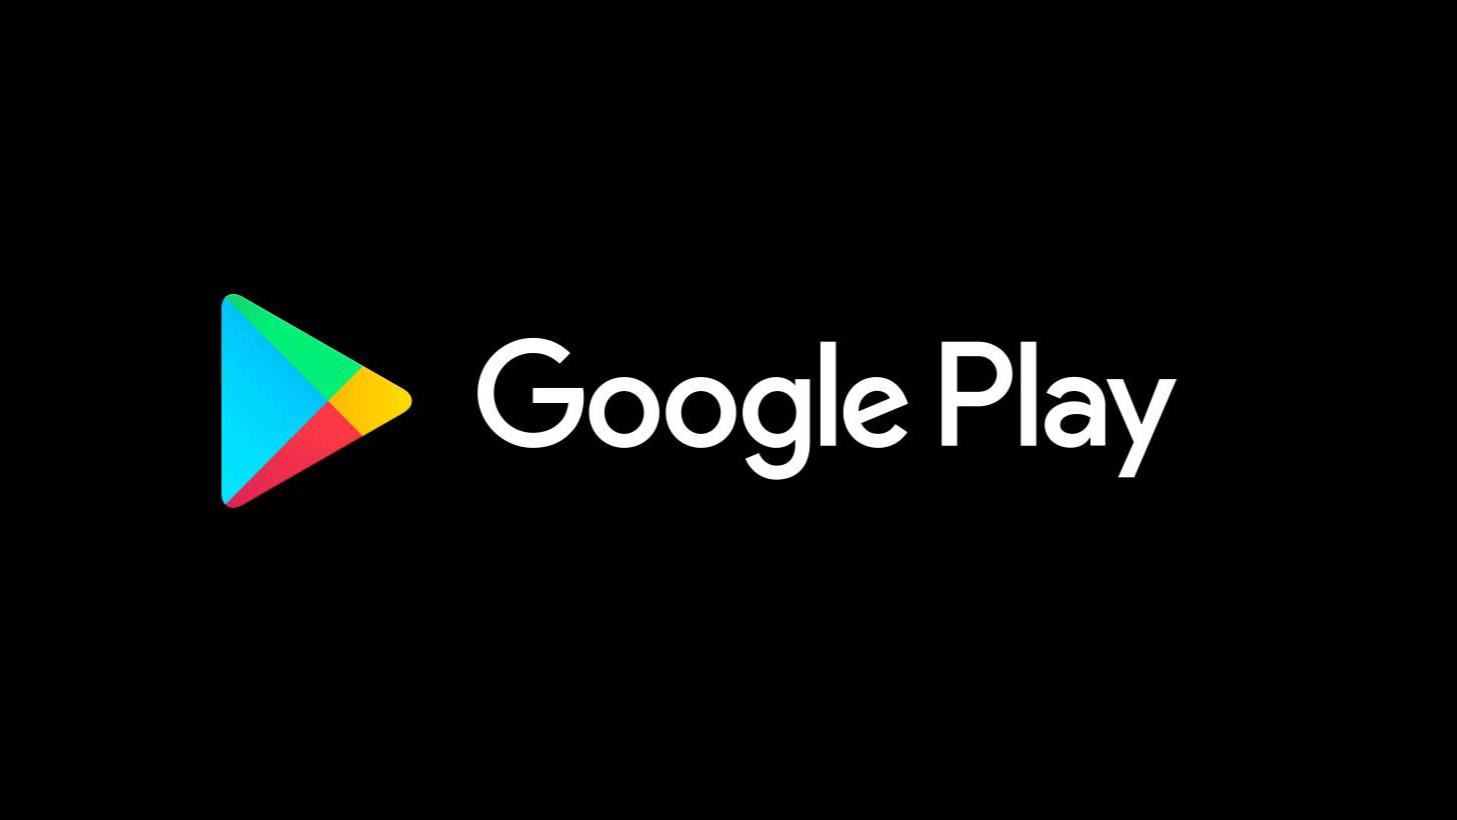 отечественный аналог Google Play Россия новости технологии санкции